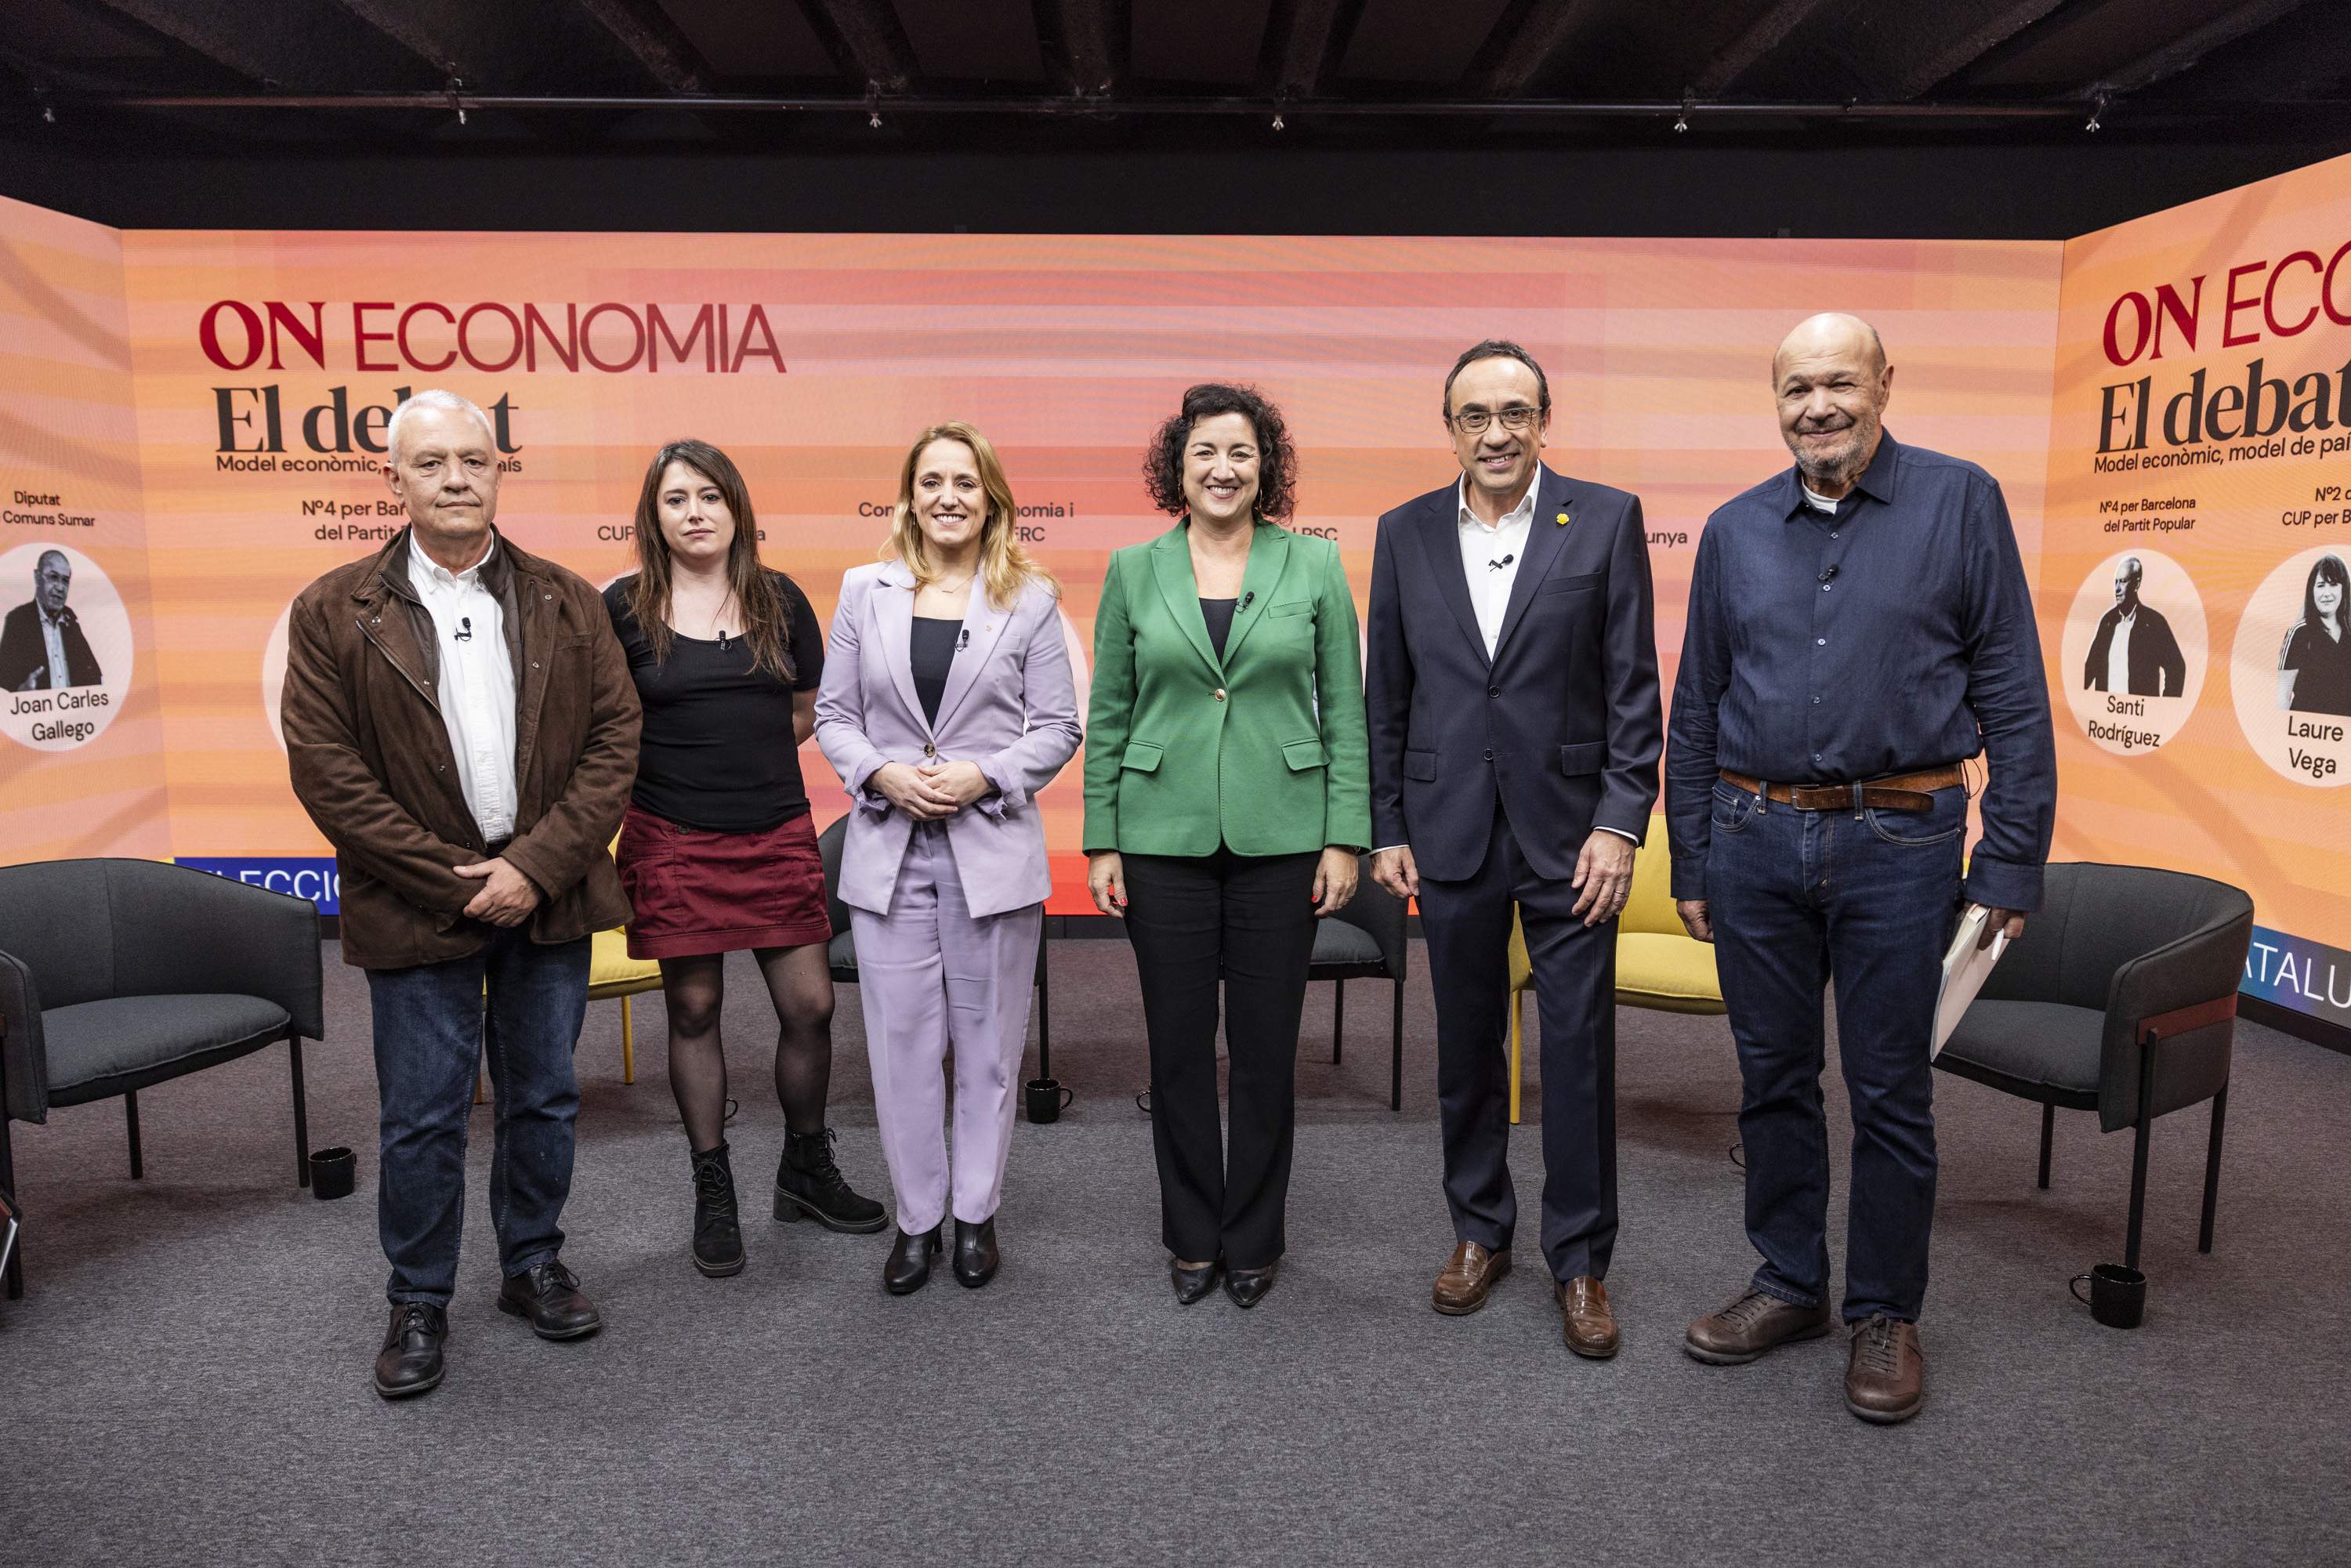 Més recursos per a Catalunya, punt de consens en el debat econòmic